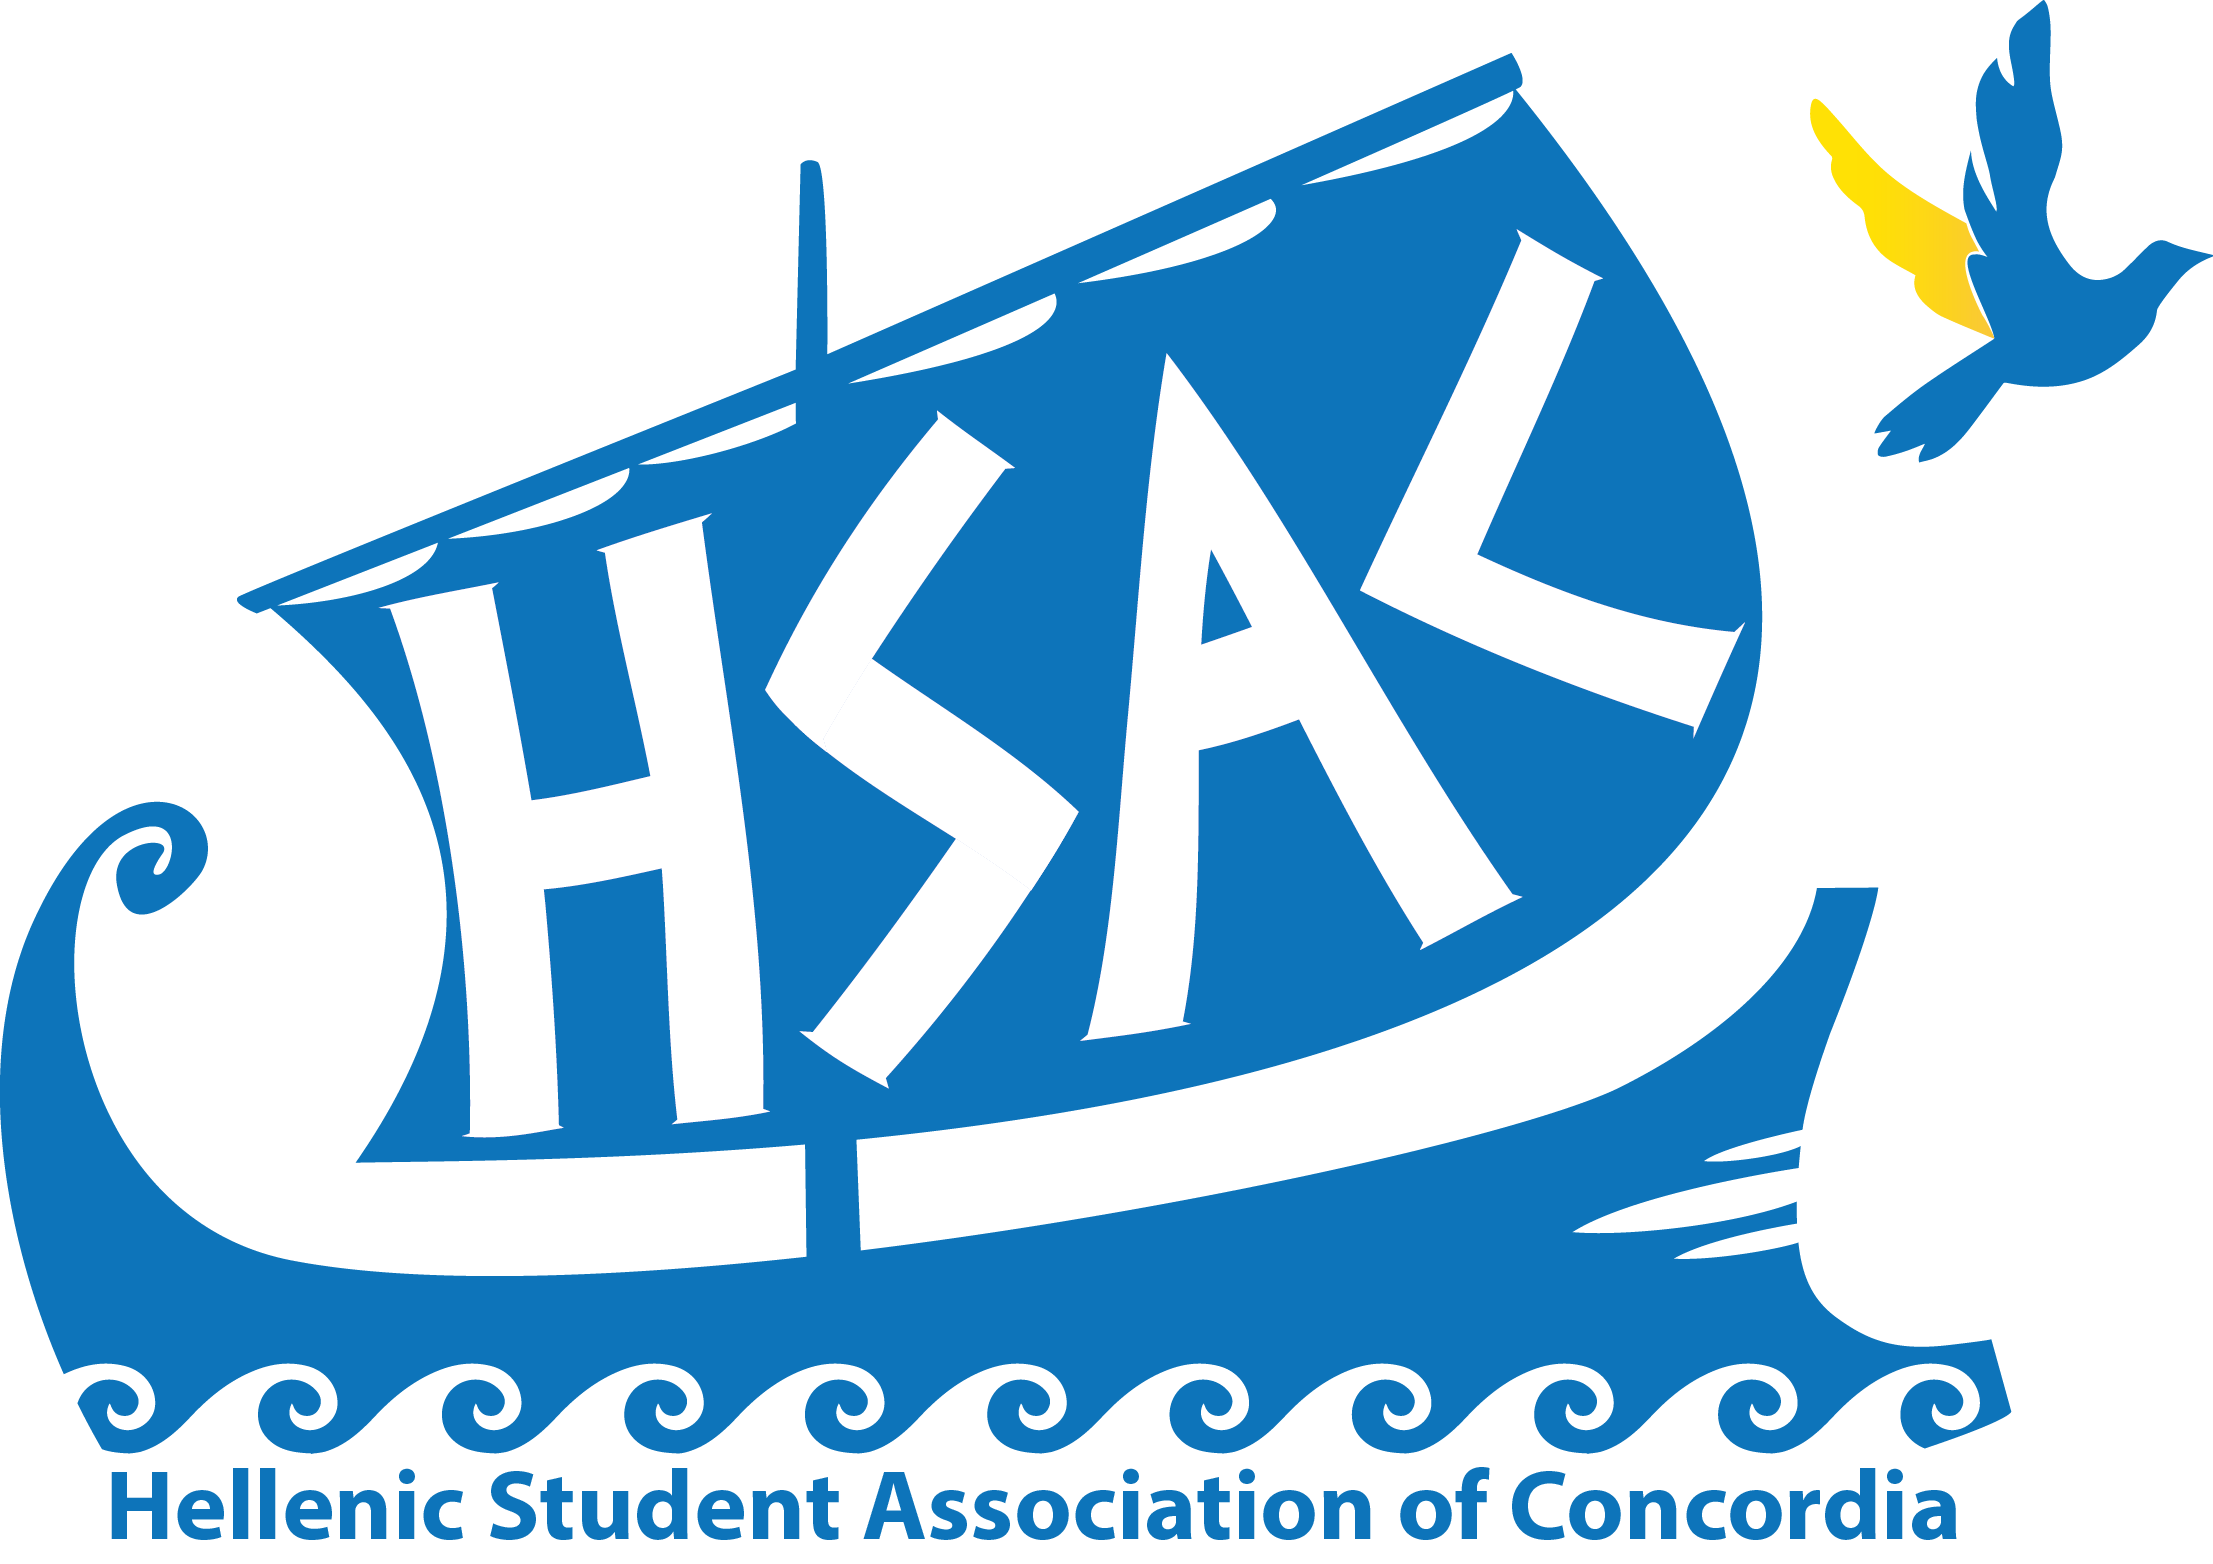 Association des étudiants helléniques (HSAC)